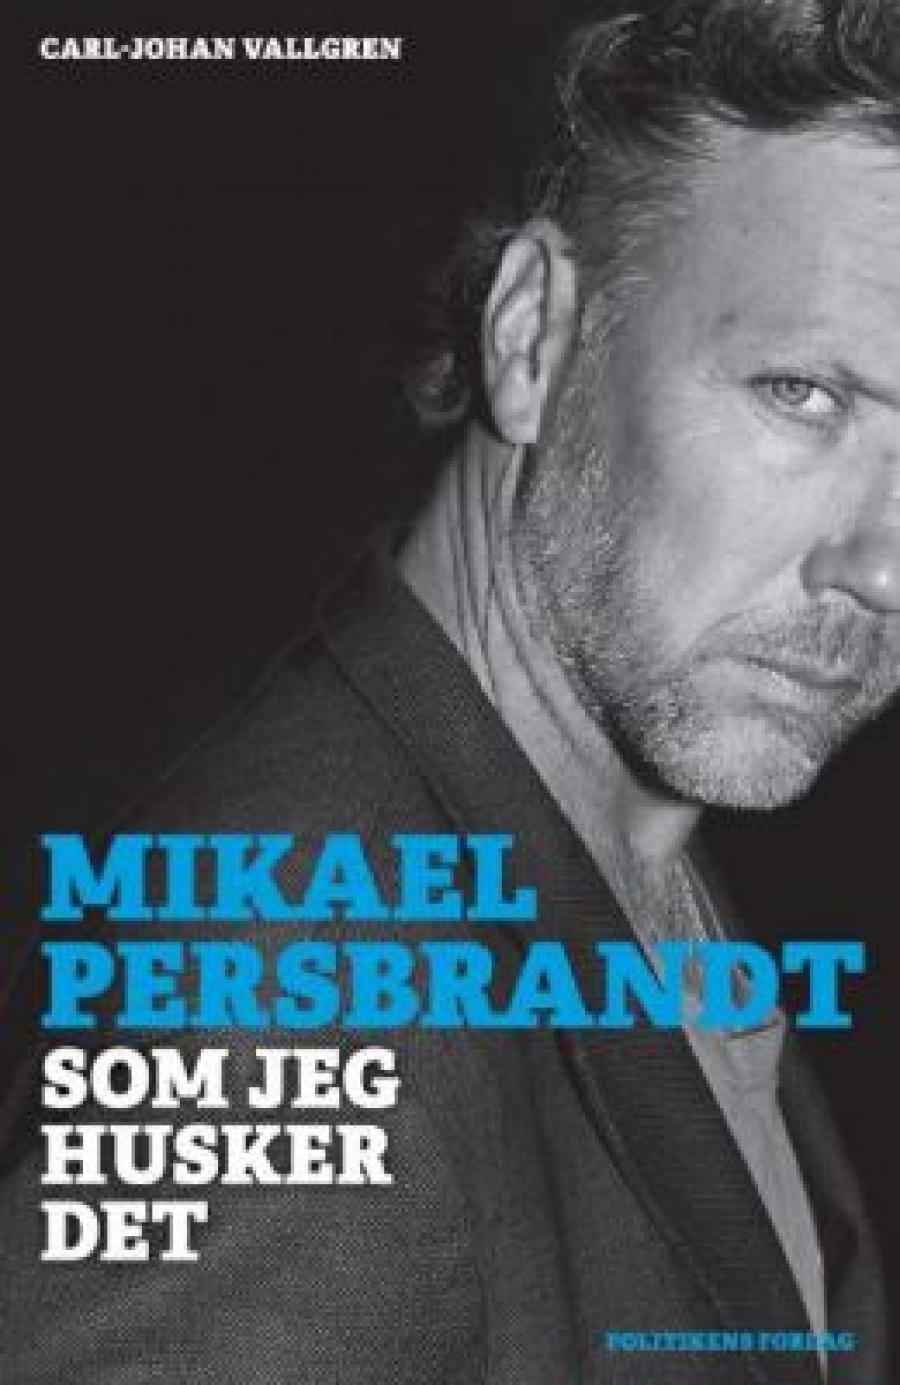 Mikael Persbrandt, "Det som jeg husker"